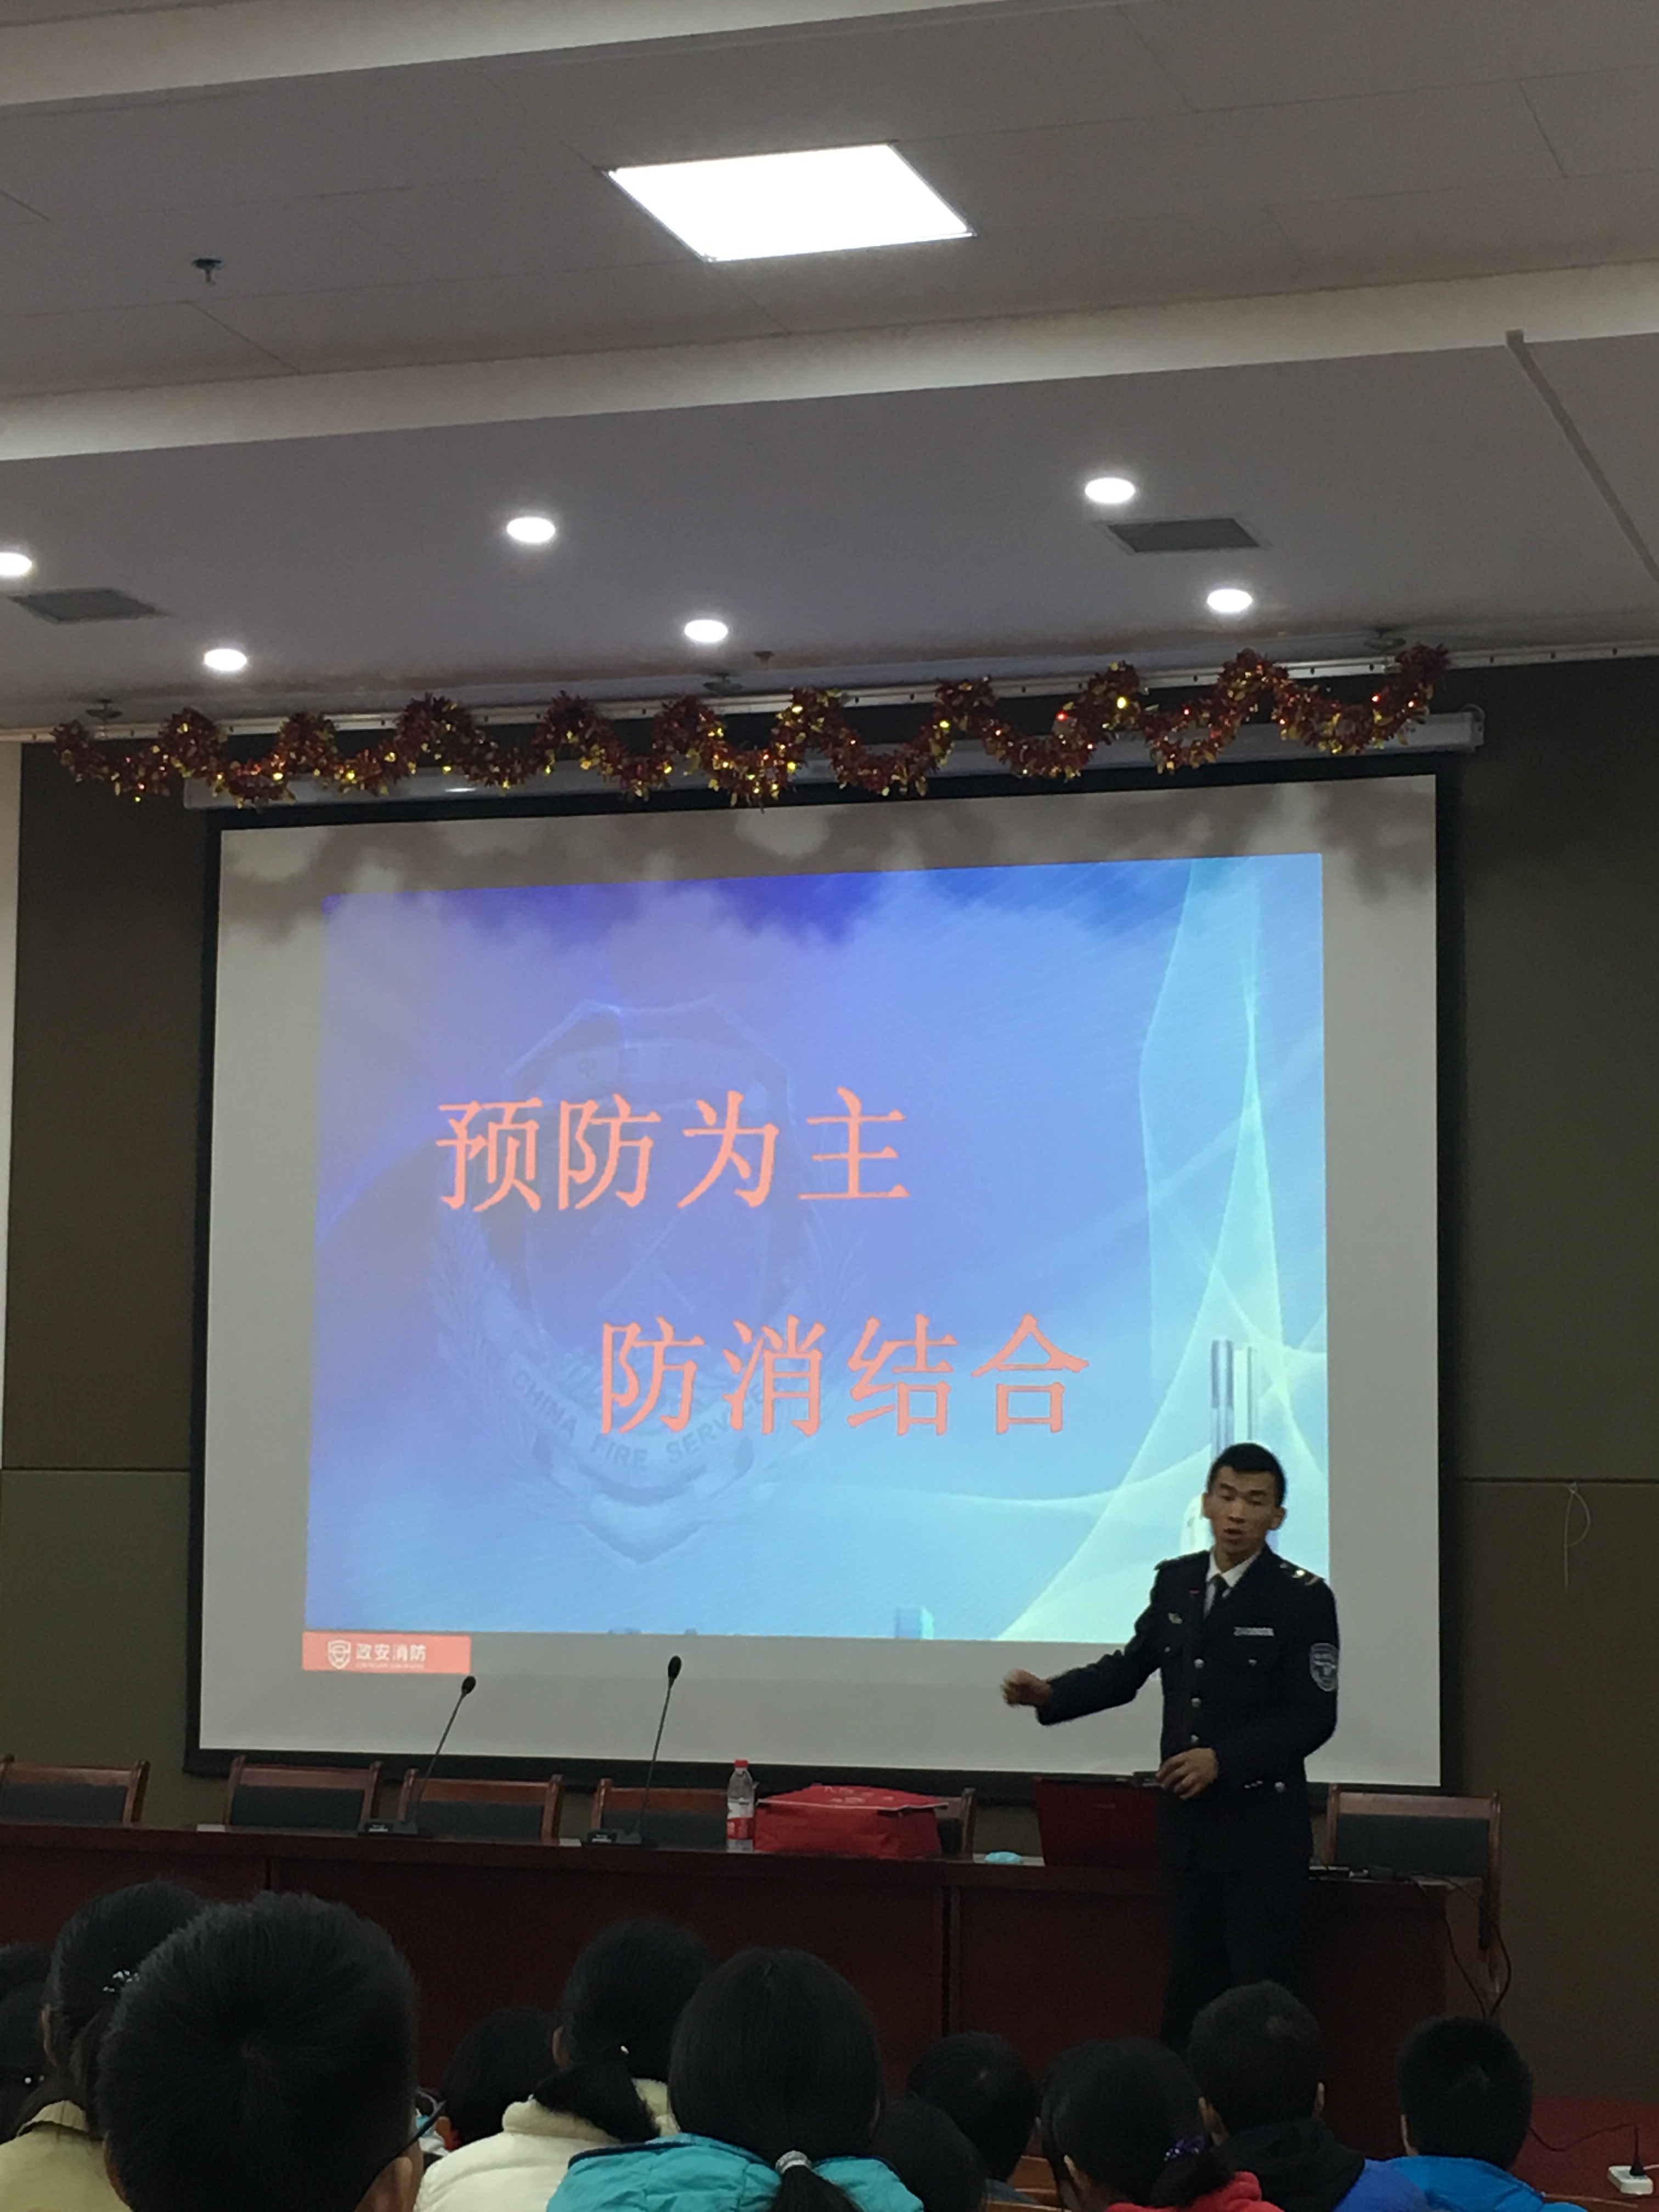 来听听消防教官的"干货"讲座——郑州龙湖一中举办消防安全知识讲座